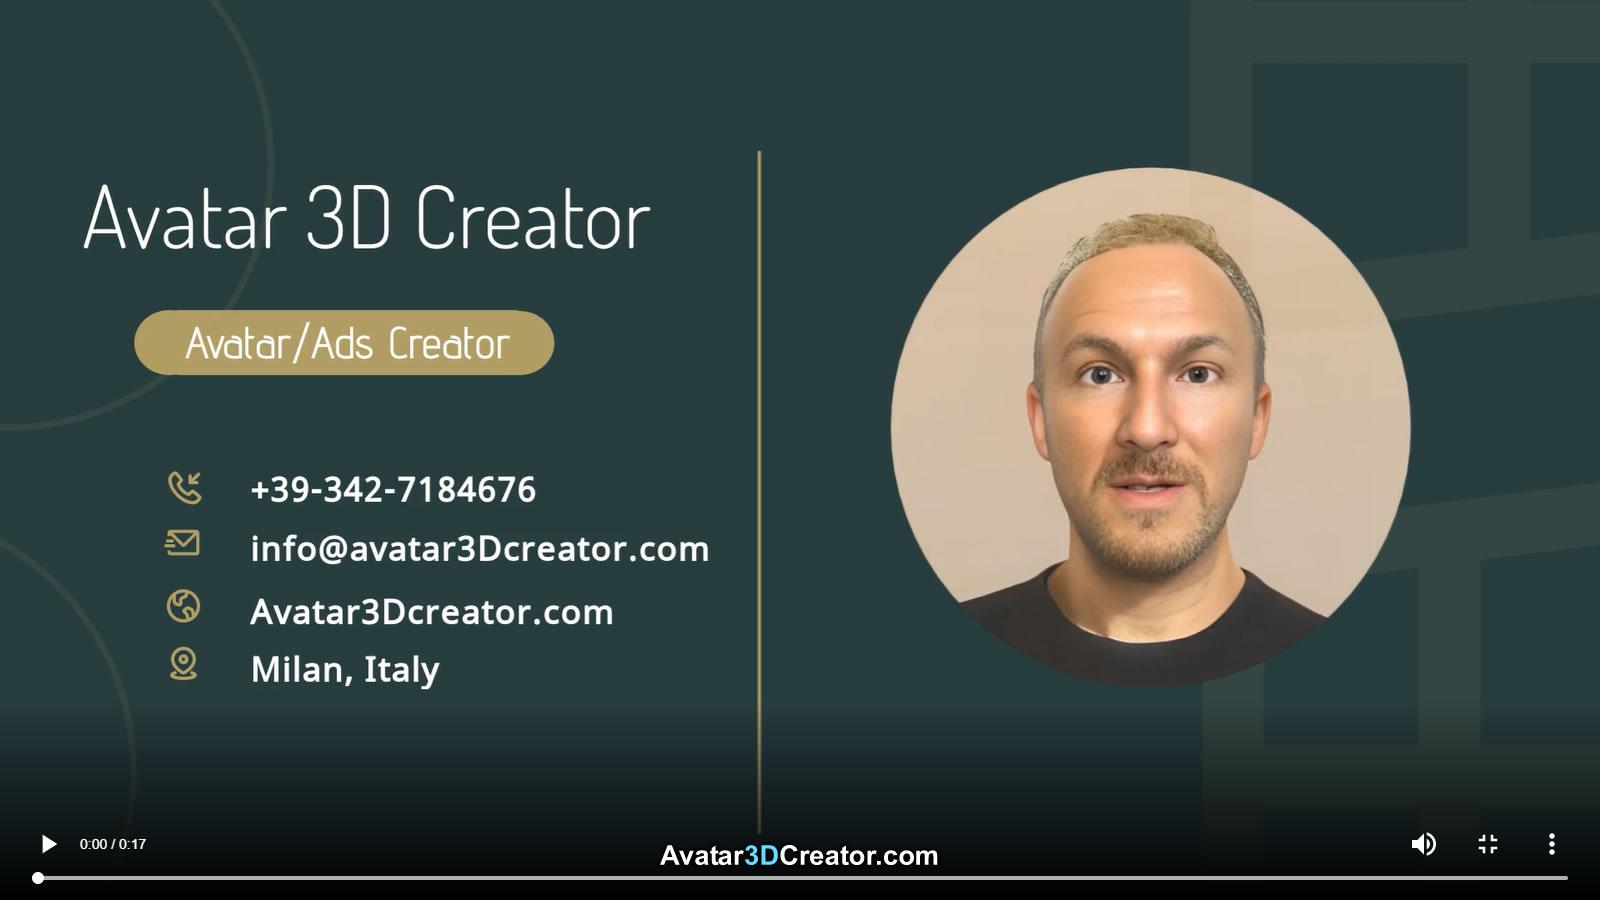 Free Avatar Maker - Online Character Maker